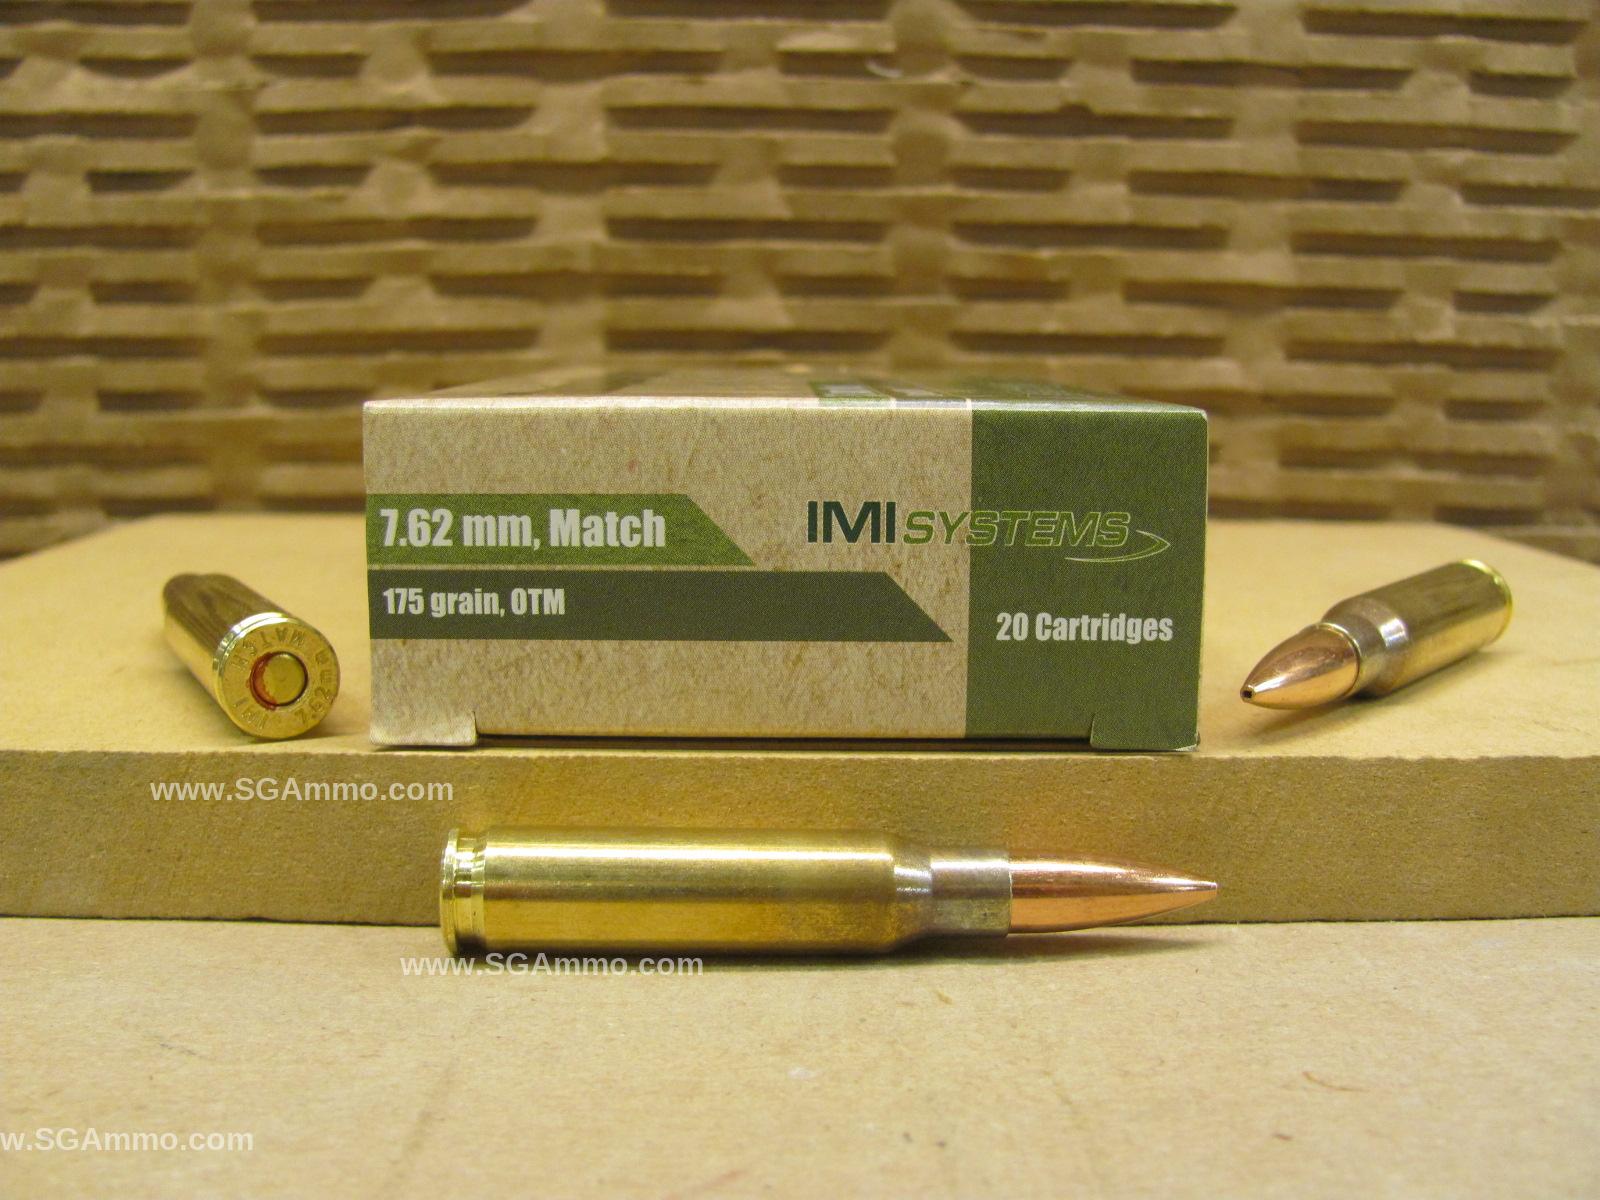 500 Round Case - 7.62x51 NATO 175 Grain BTHP SMK OTM Razor Core Match Ammo by IMI